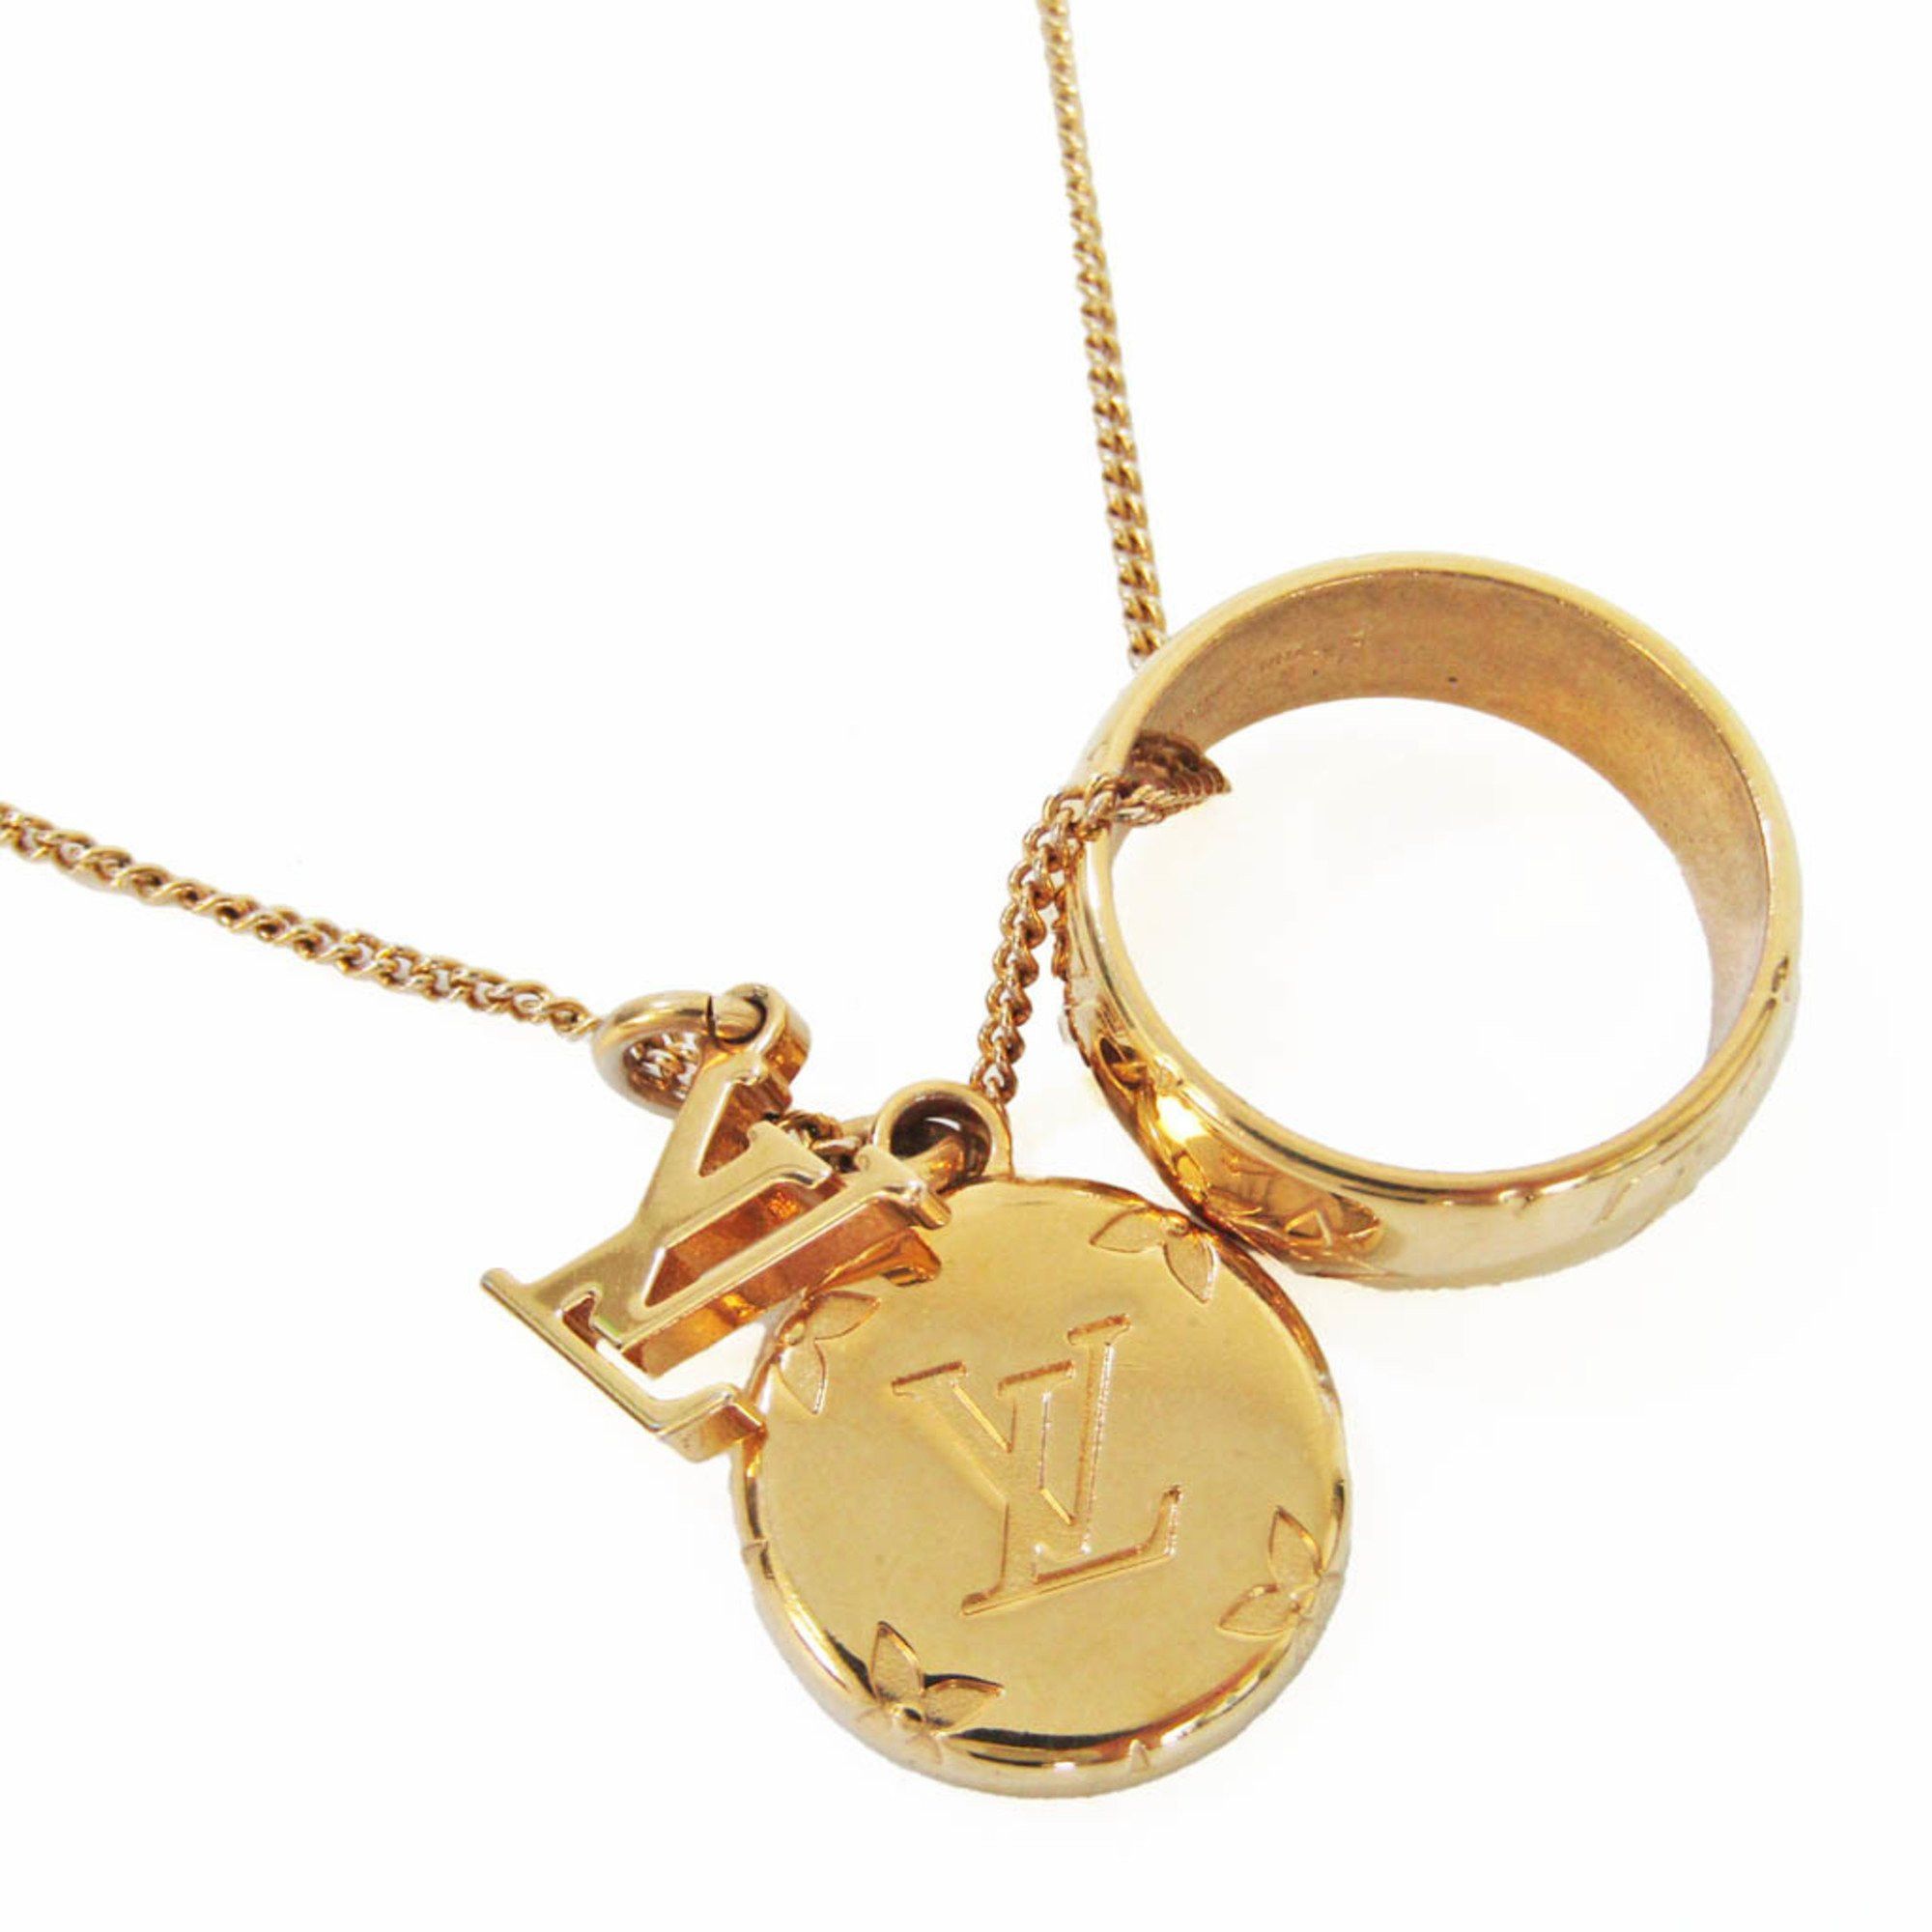 LOUIS VUITTON Necklace Pendant LV Monogram Ring M80189 Gold GP authentic